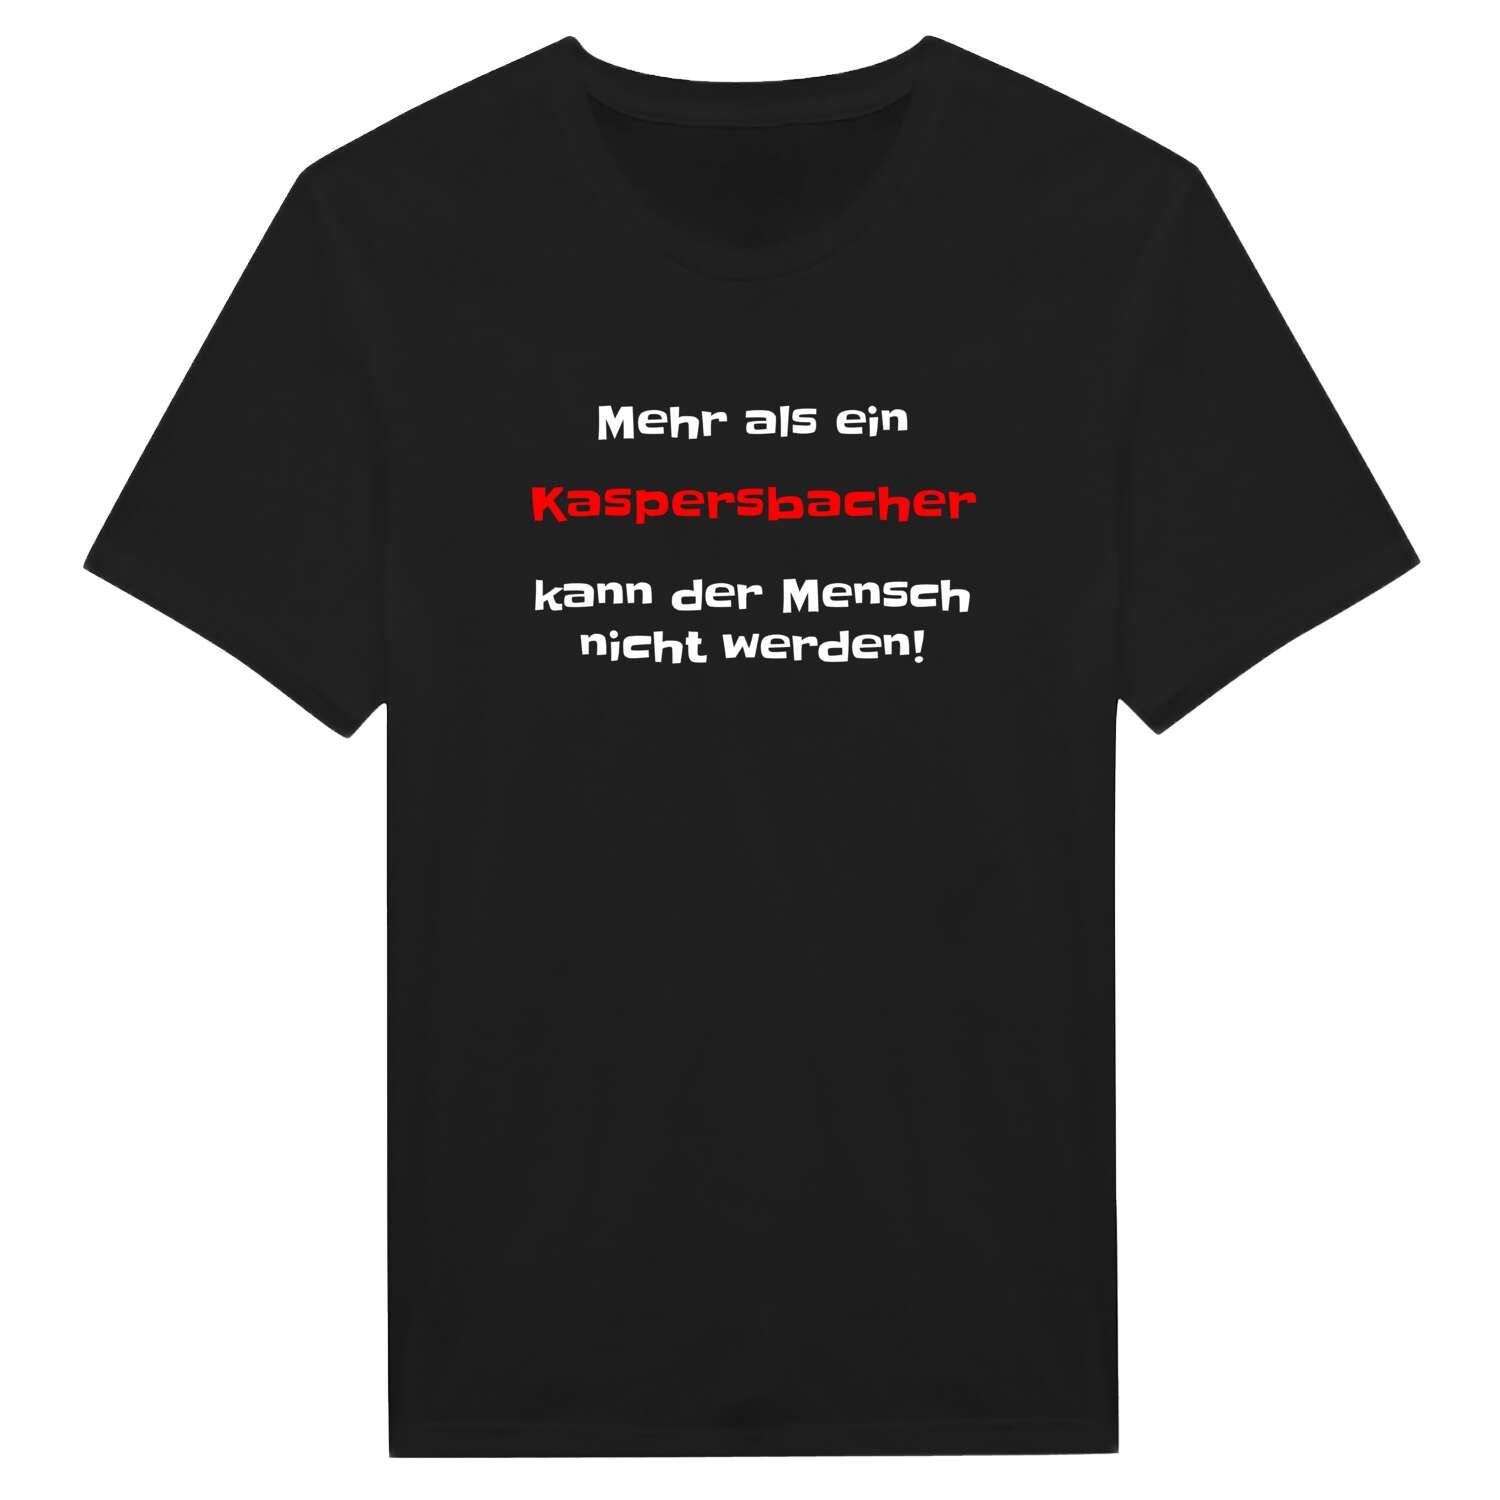 Kaspersbach T-Shirt »Mehr als ein«